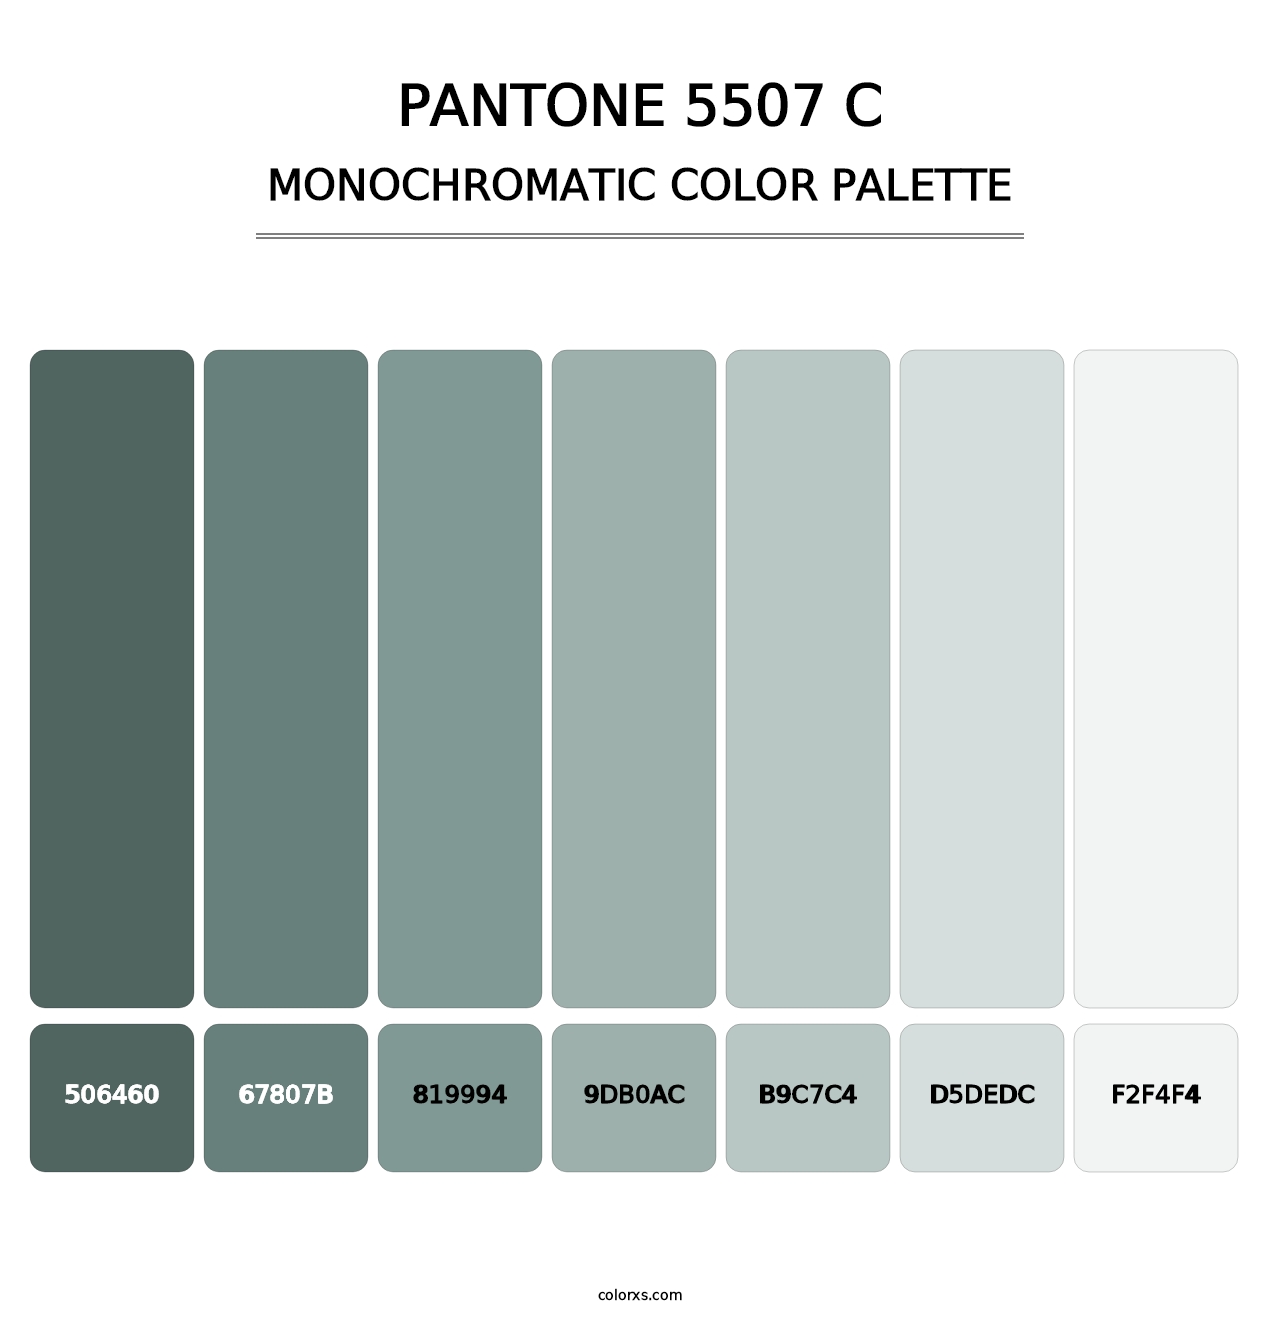 PANTONE 5507 C - Monochromatic Color Palette